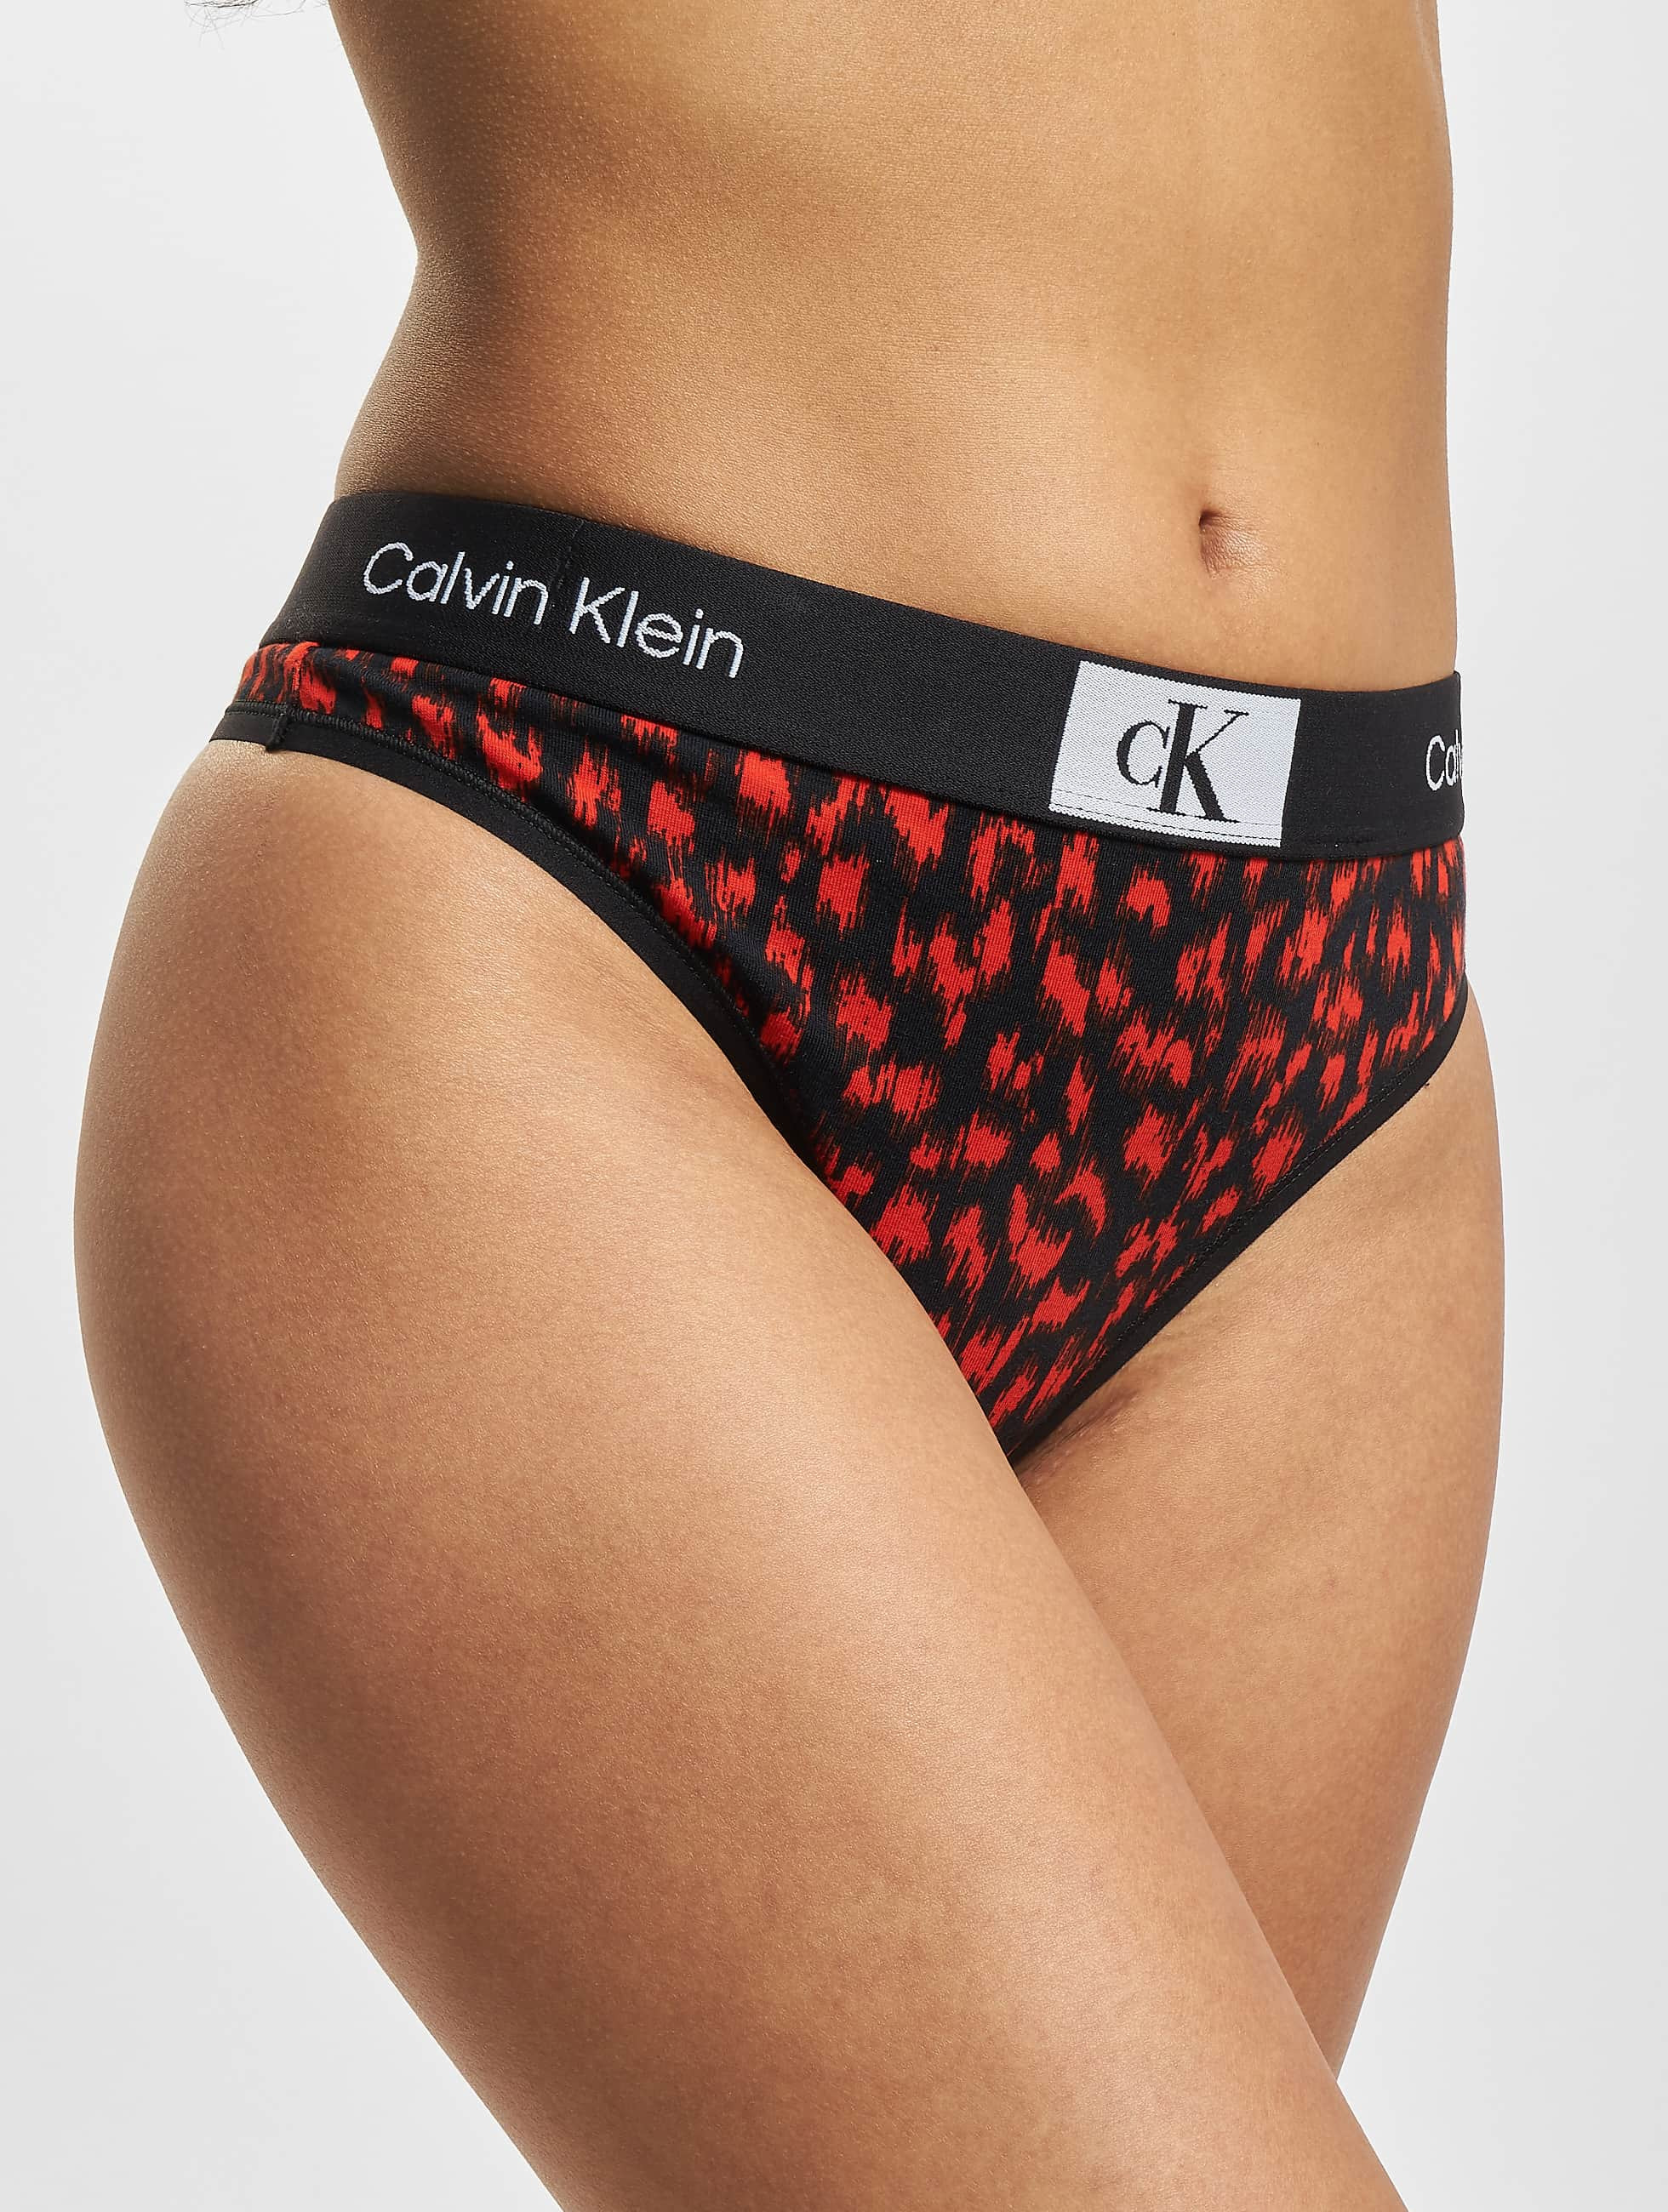 Ingrijpen Inzichtelijk Voorlopige Calvin Klein Ondergoed / Badmode / ondergoed Modern Tanga Blur in bont  986519